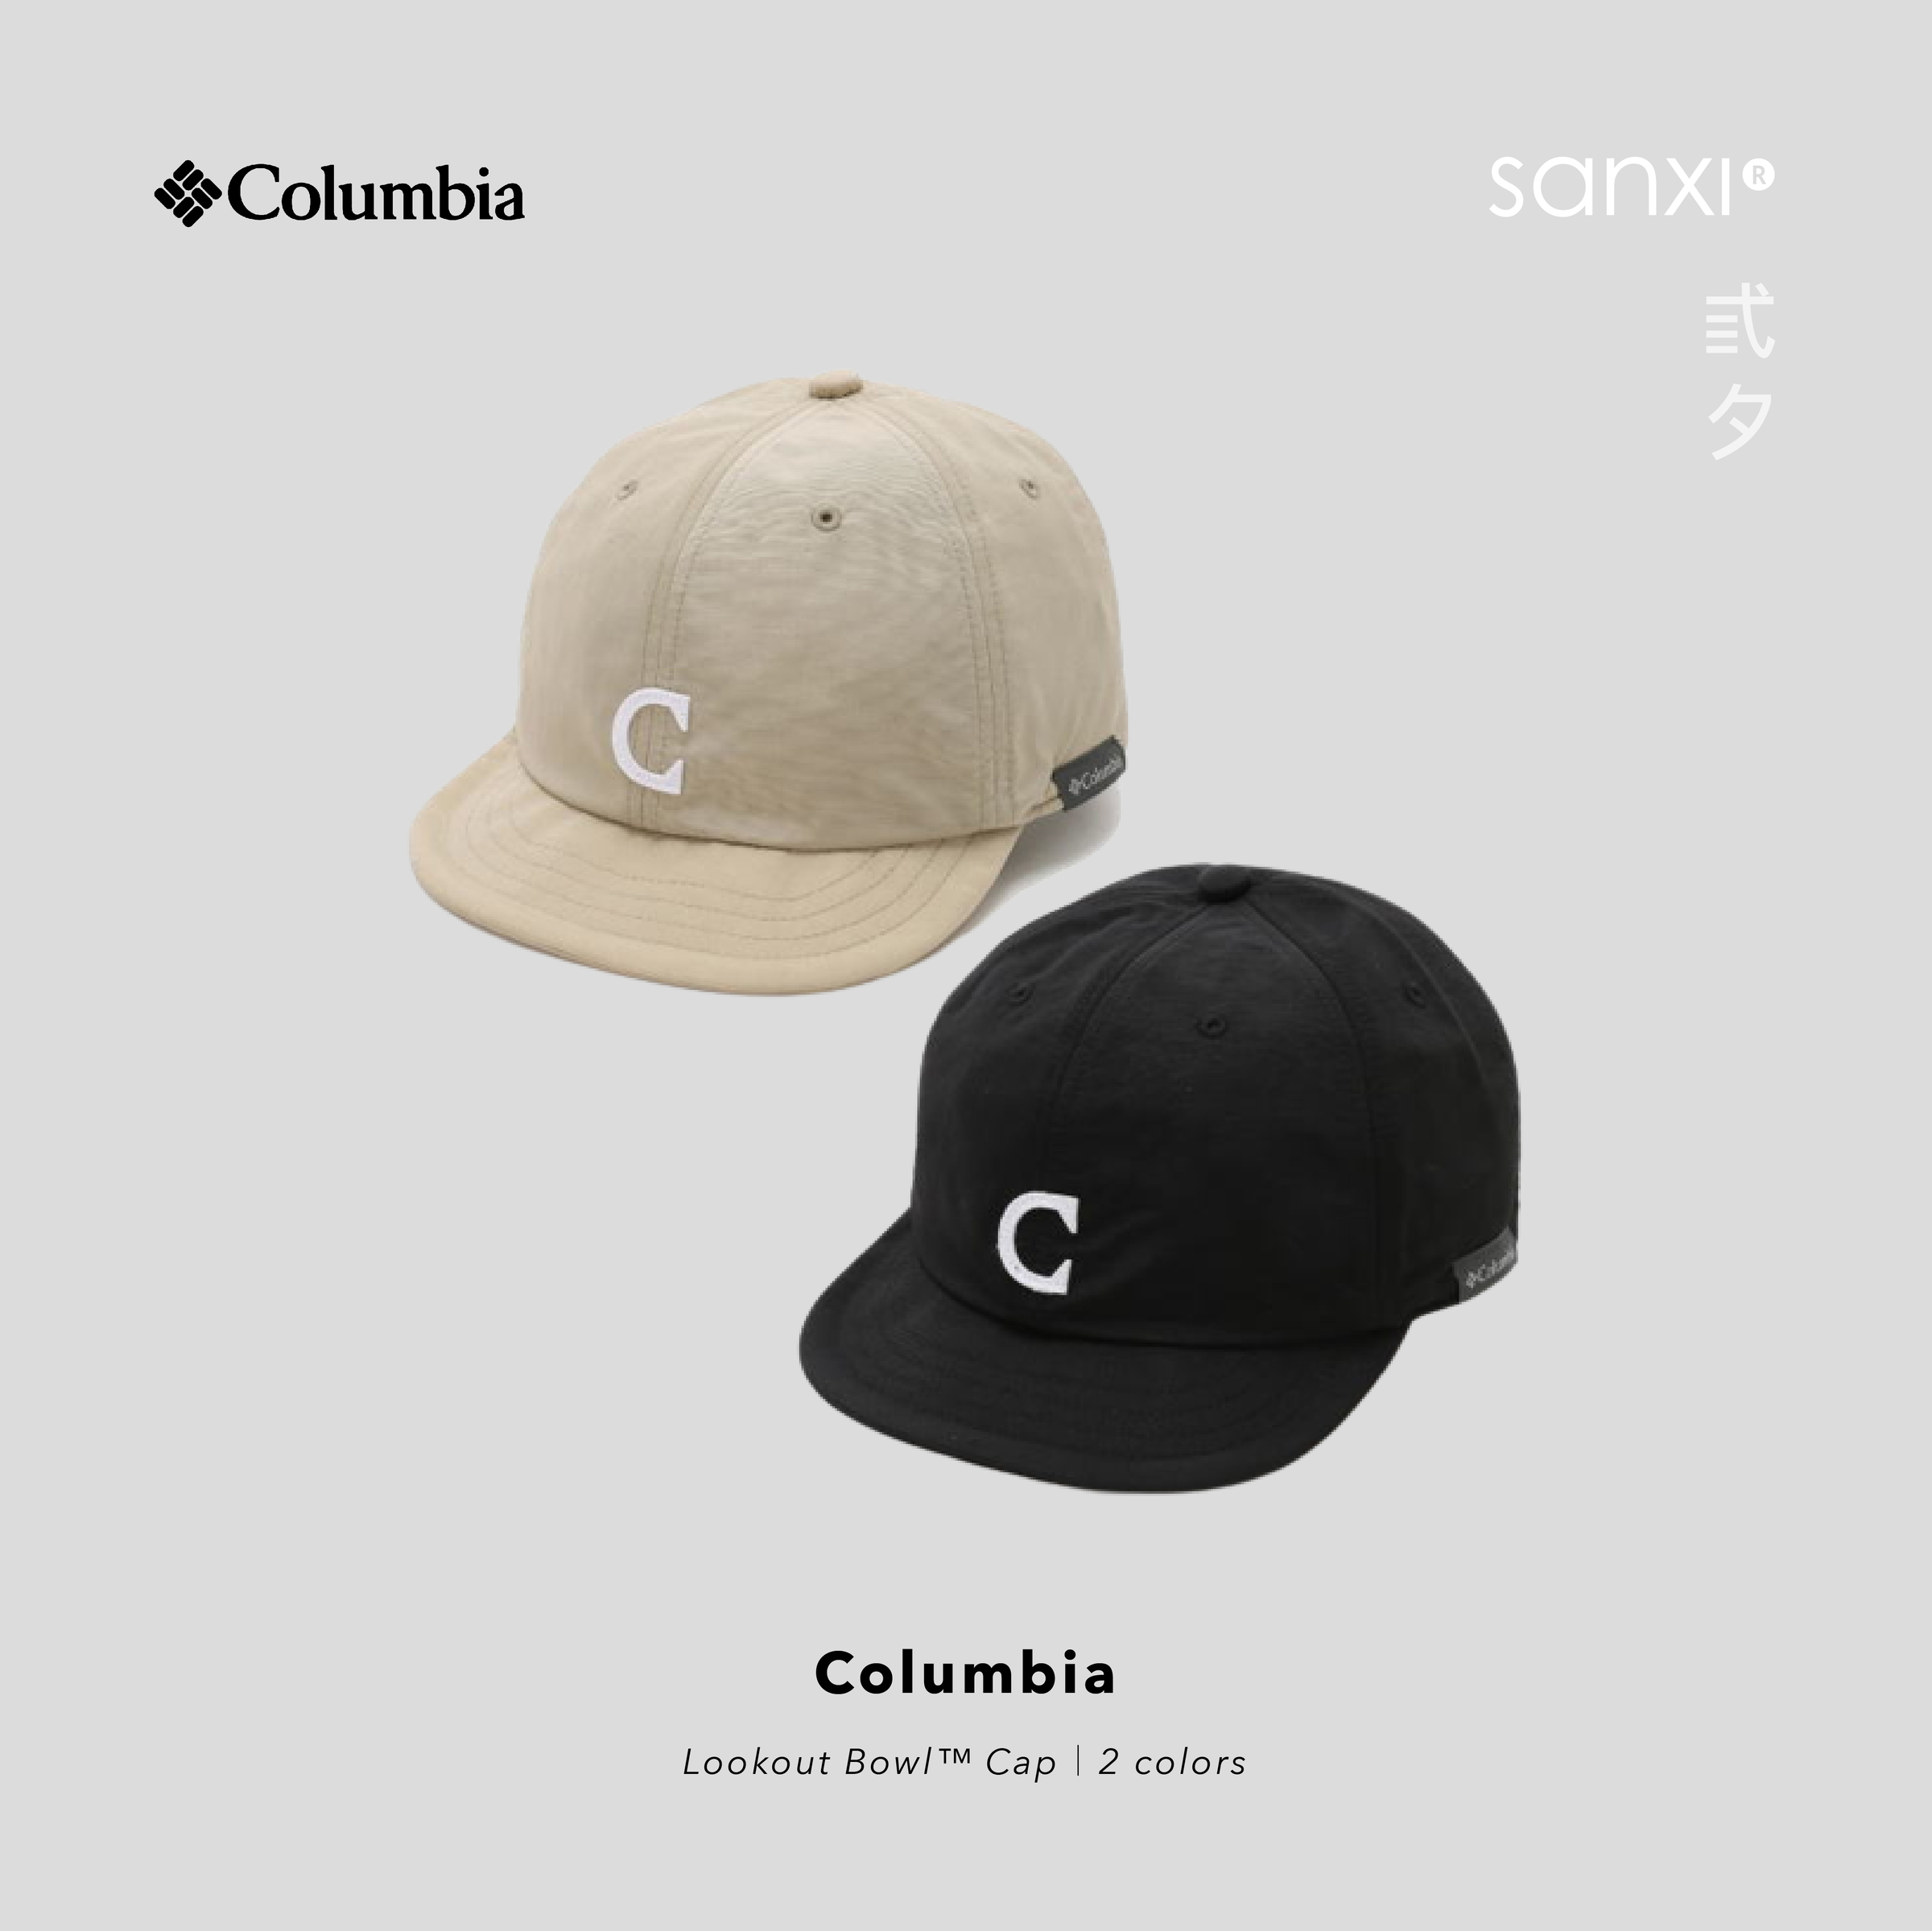 SANXI_商品圖｜Columbia_Columbia Lookout Bowl™ Cap